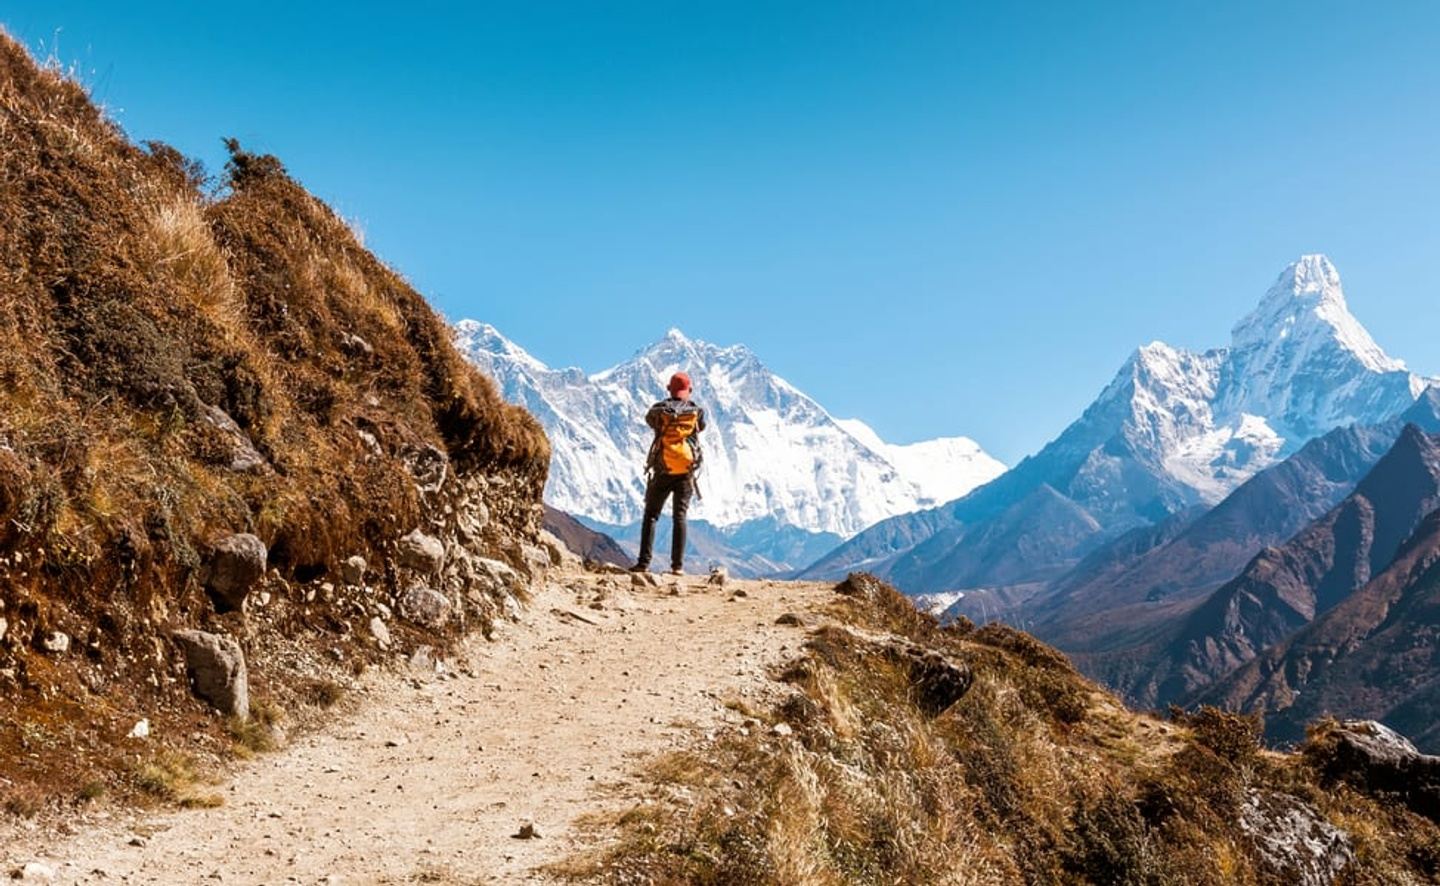 Everest 3 High Passes Trek - 18 Days